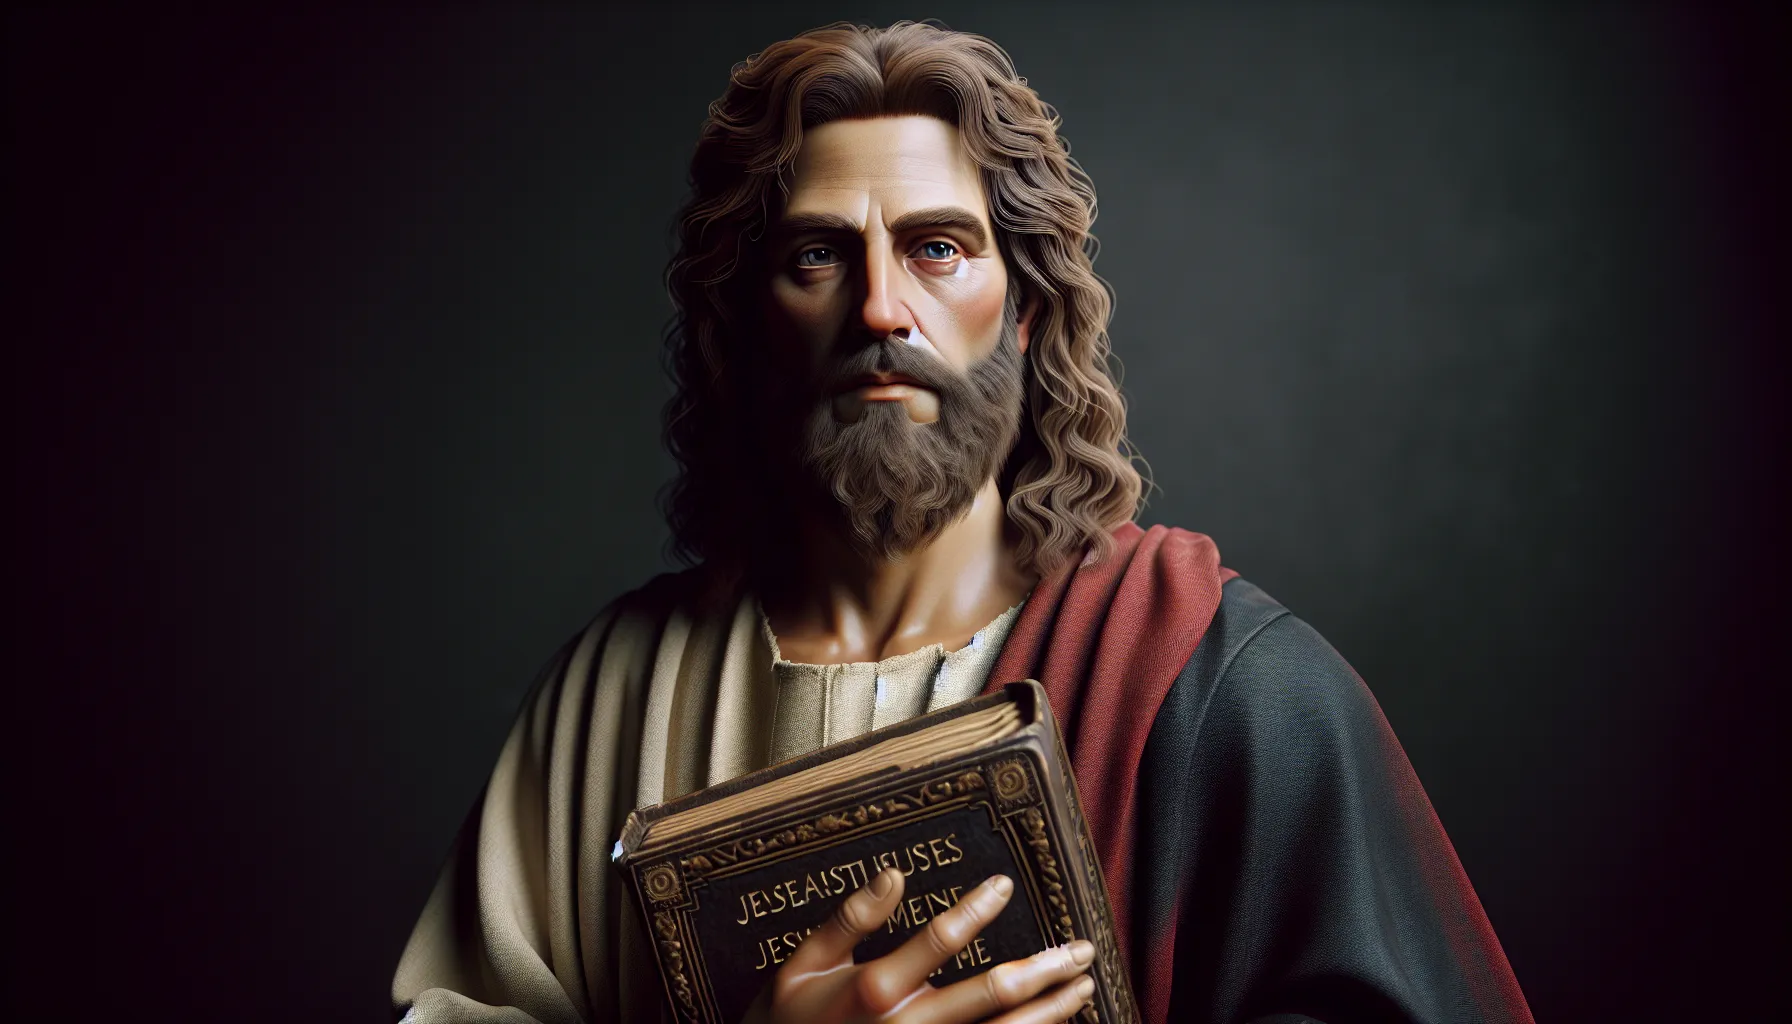 Imagen representativa del apóstol Mateo, uno de los doce apóstoles en la Biblia, destacando su importancia y rol en el cristianismo.